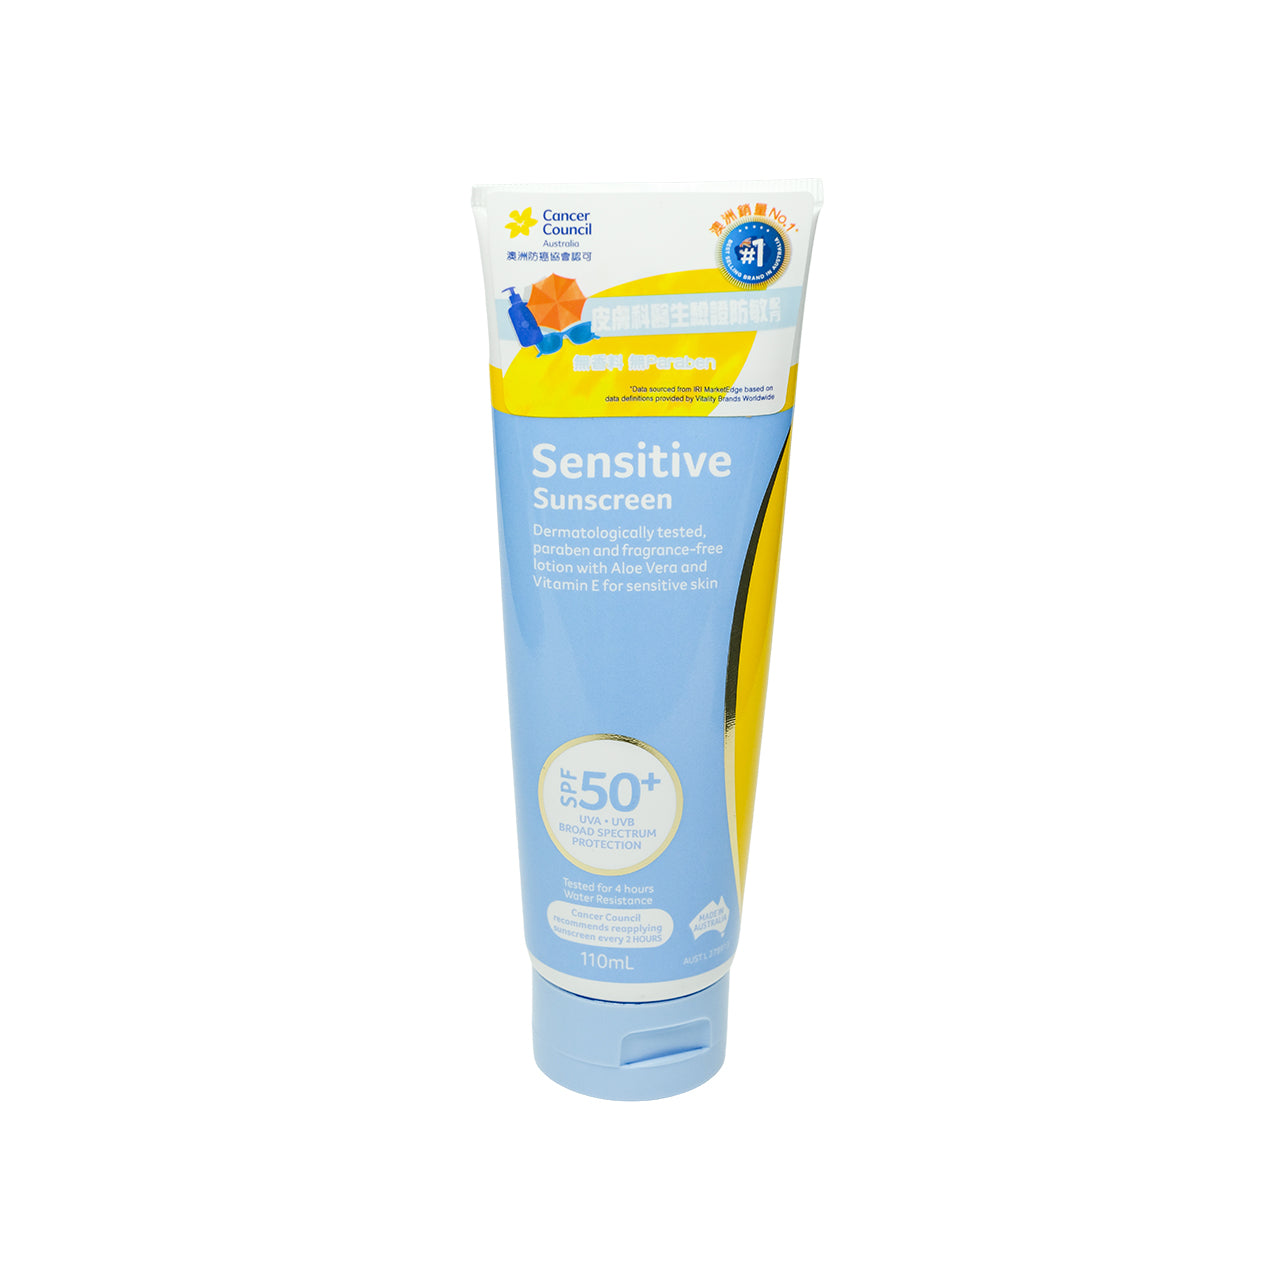 Cancer Council  Sensitive Sunscreen SPF50+ 110ml | Sasa Global eShop